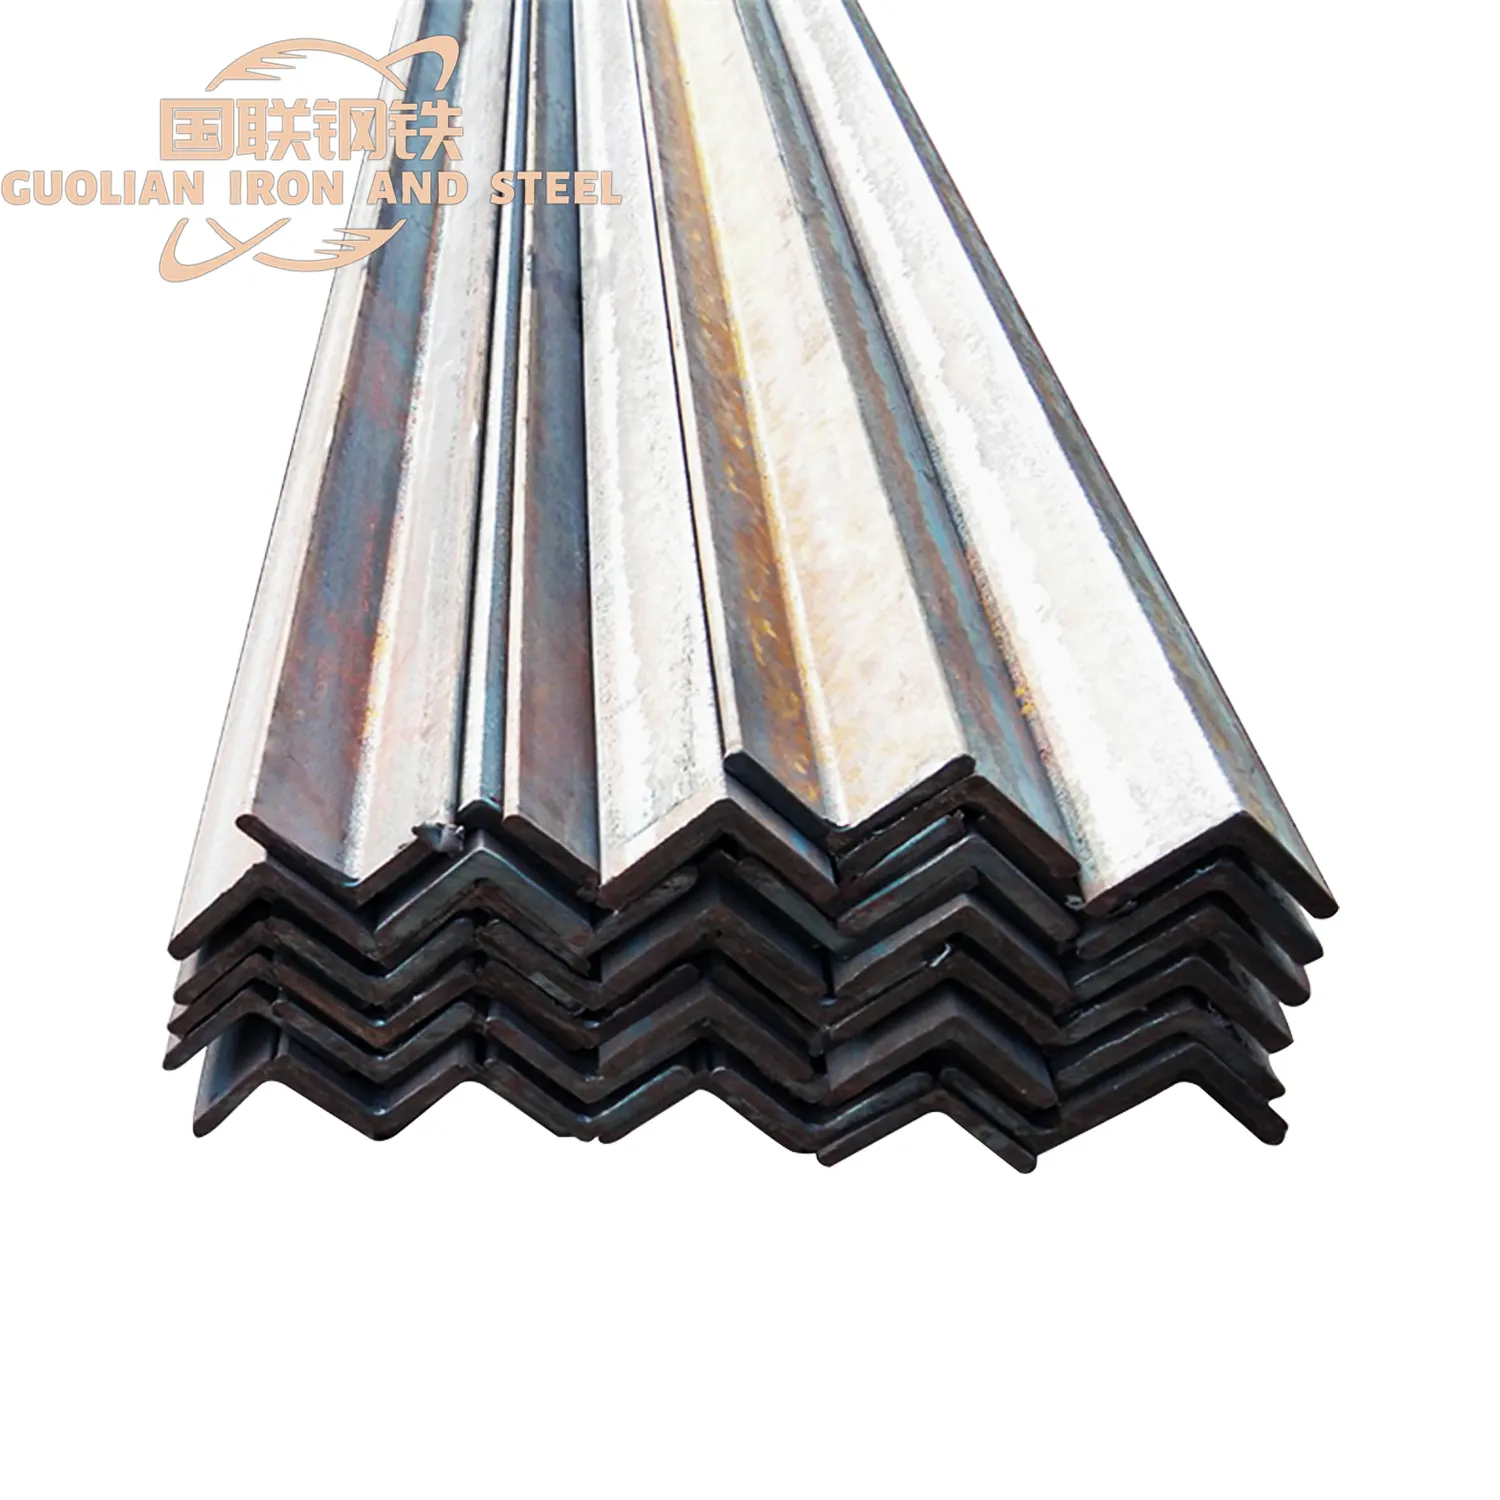 Weichstahl 2-Zoll Winkel-Eisen 4 × 4 gleicher Galvanisierter Stahl Winkel ASTM Standard Biegen-Bearbeitungsservice konkurrenzfähiger Preis